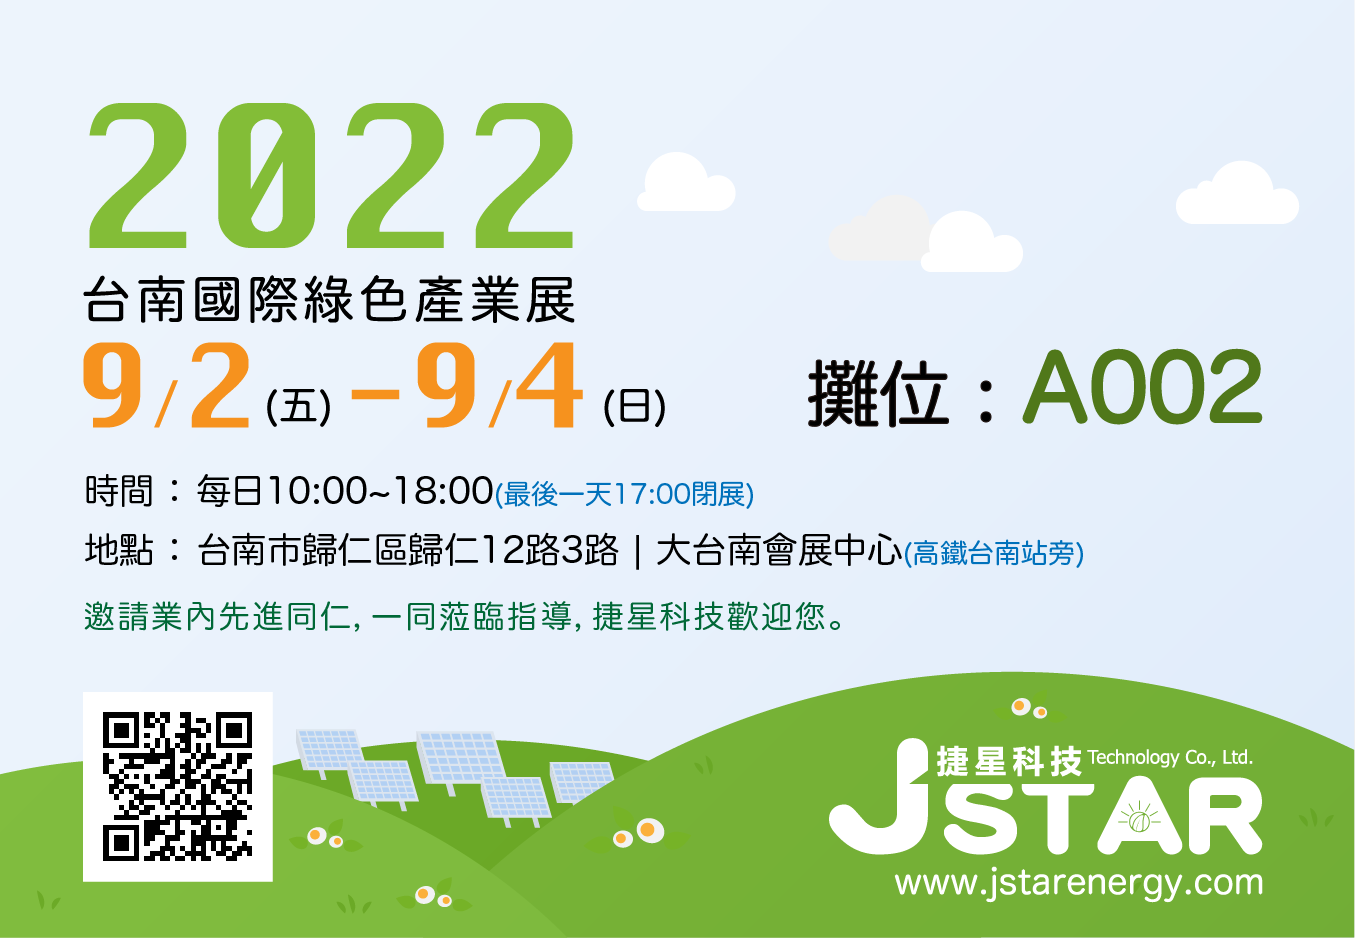 2022臺南國際綠色產業展 | 捷星科技參展 | 太陽能材料供應商